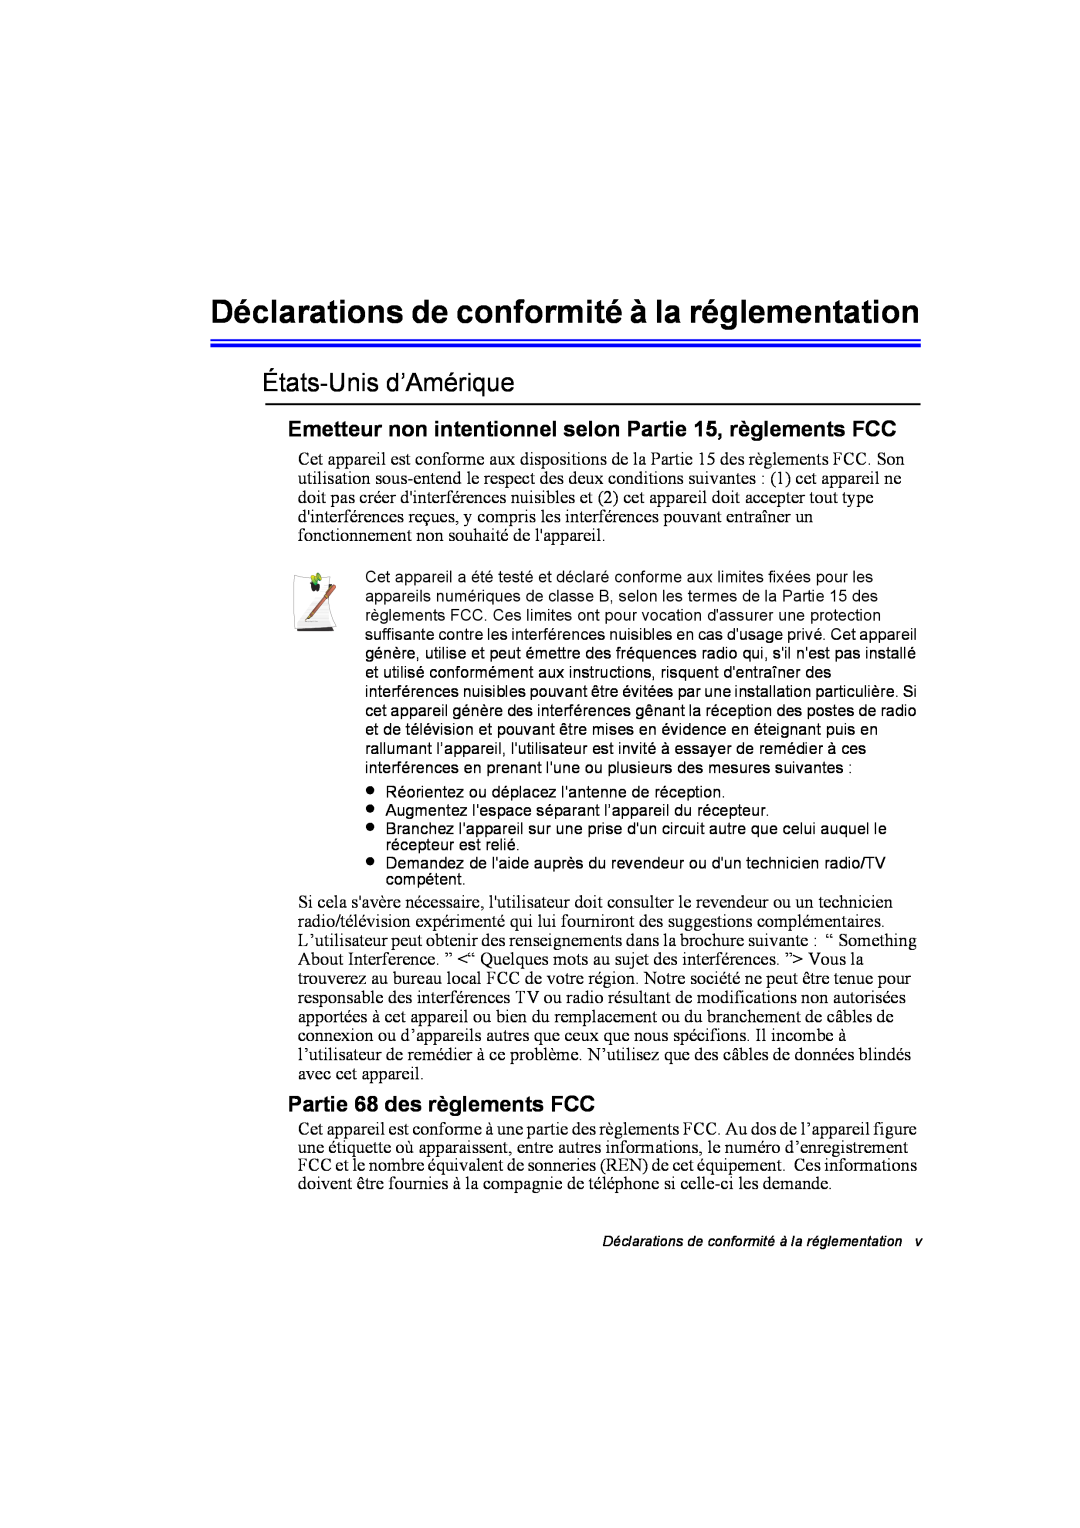 Samsung NA10DH008K/SEF Déclarations de conformité à la réglementation, États-Unis d’Amérique, Partie 68 des règlements FCC 